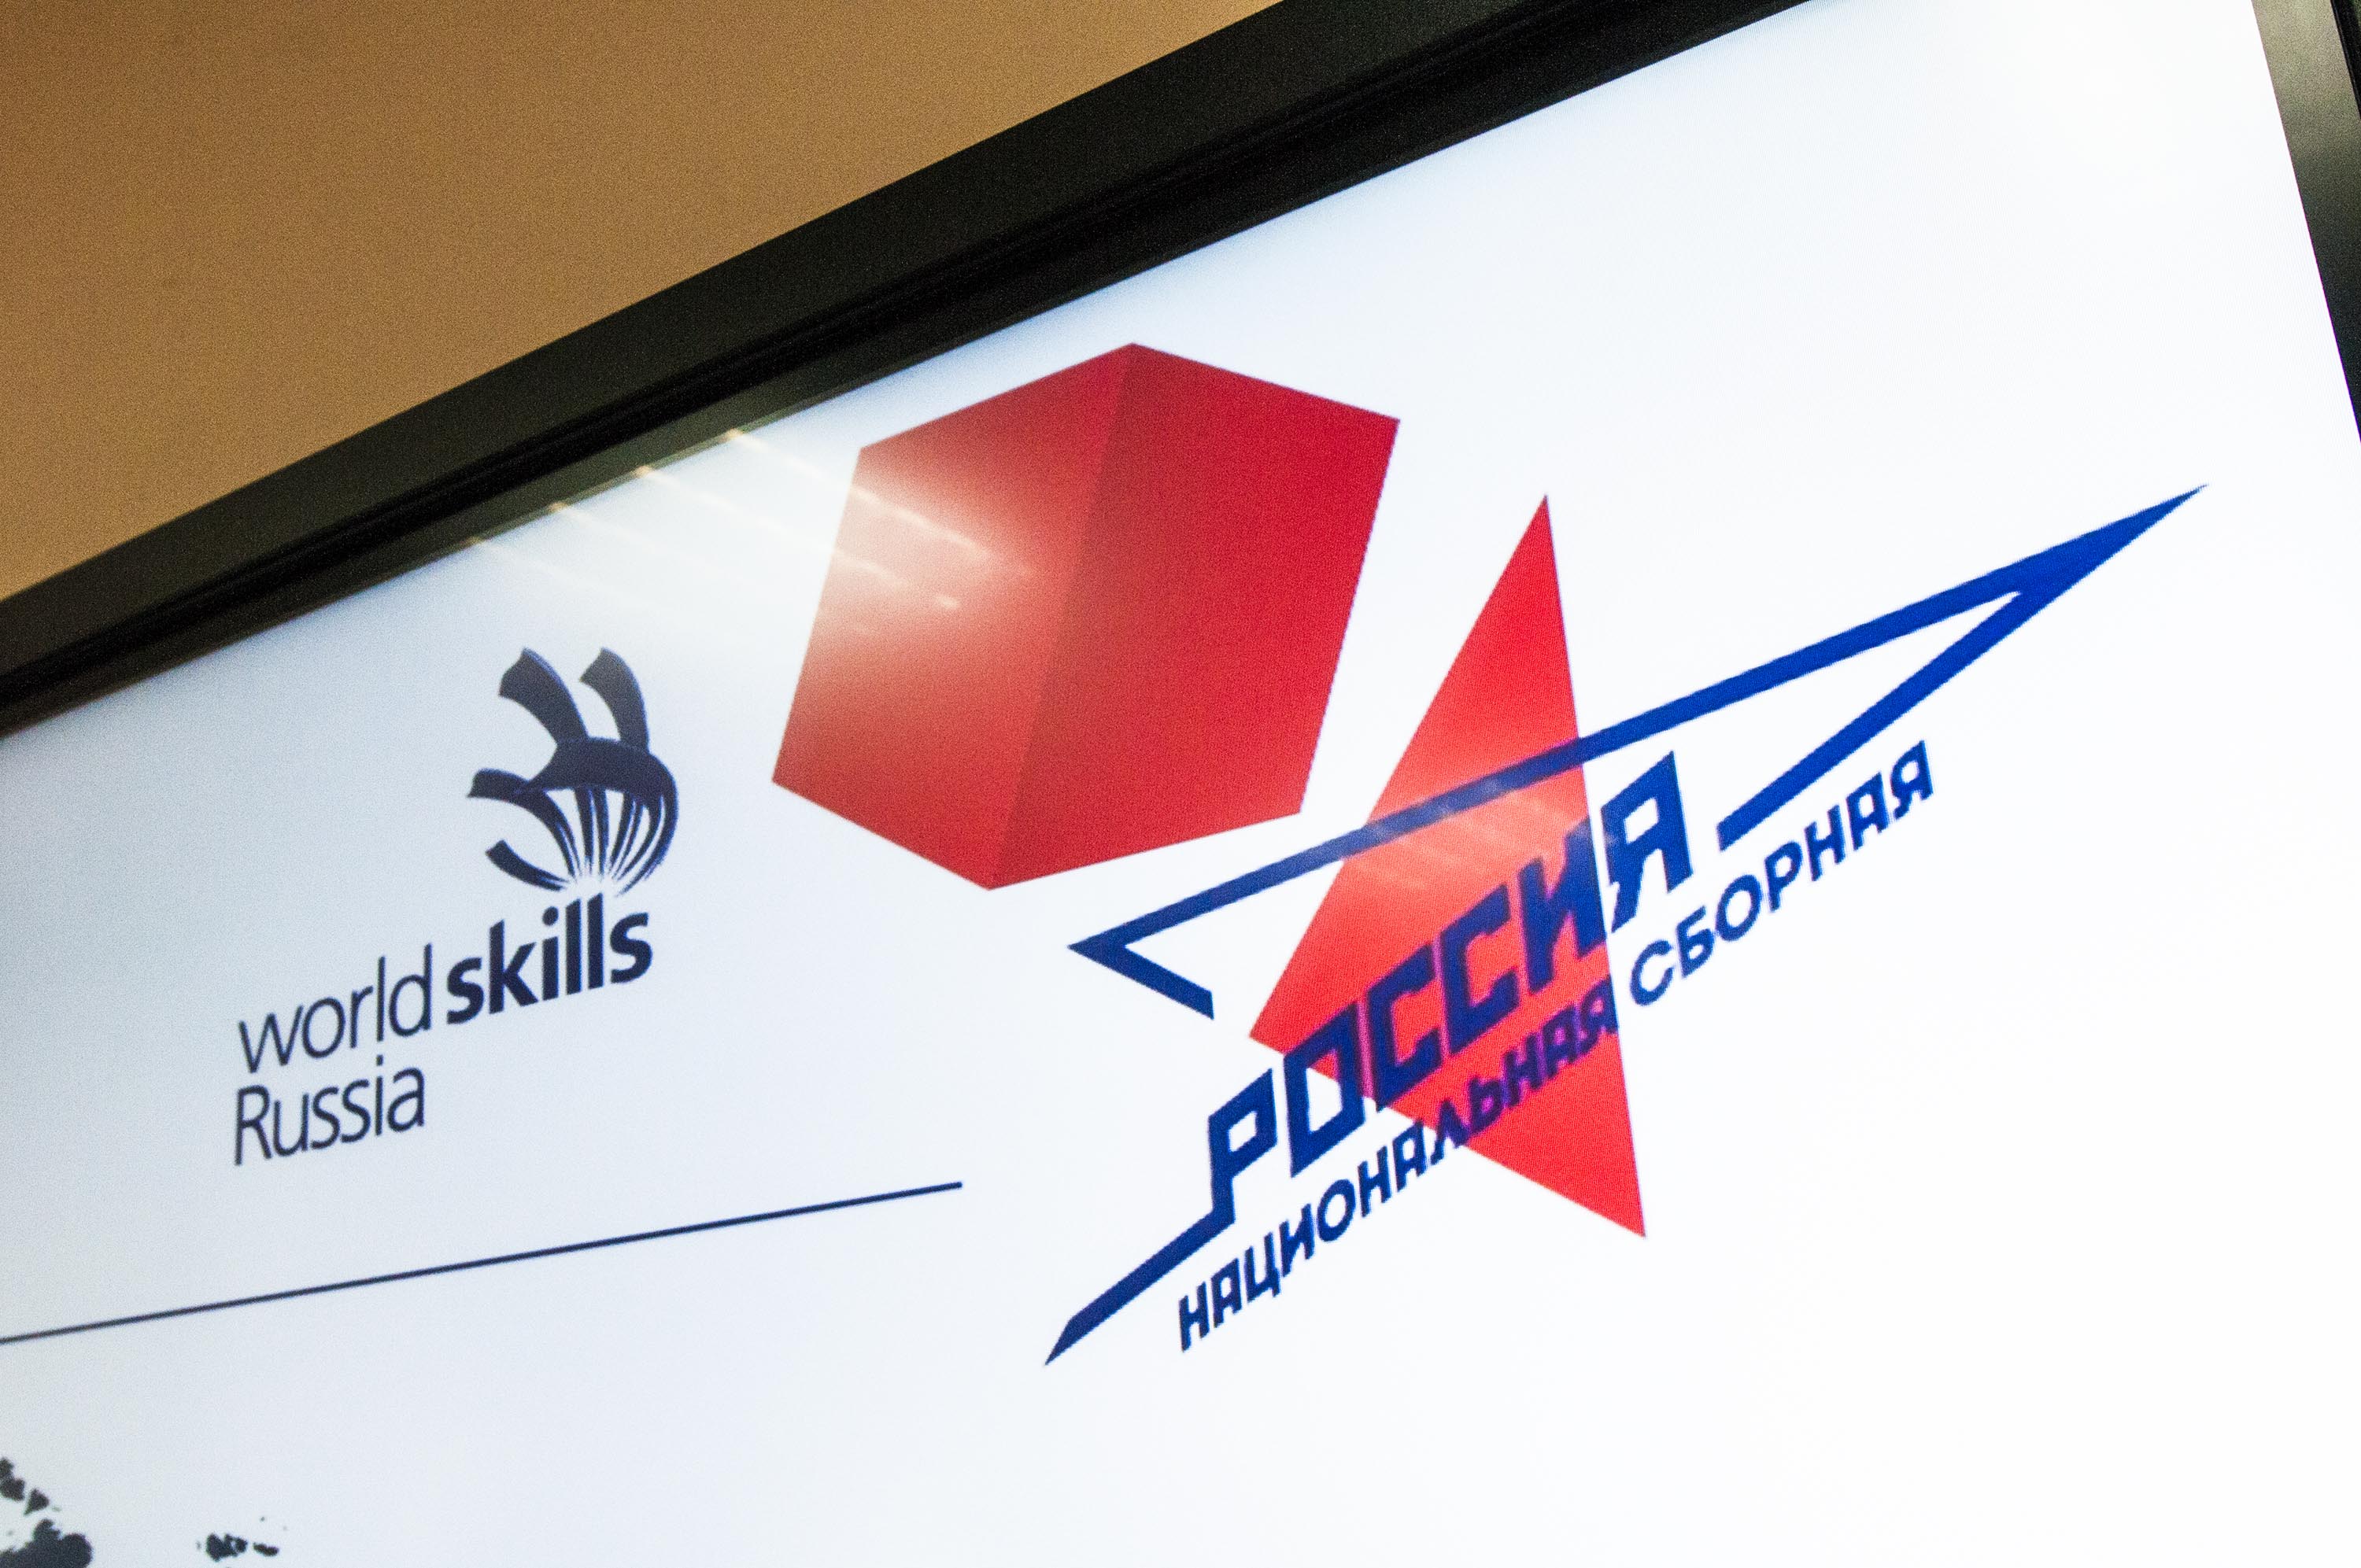 Сергей Цивилев: «Чемпионат WorldSkills покажет молодежи самые востребованные рабочие специальности и поможет выбрать профессию» 